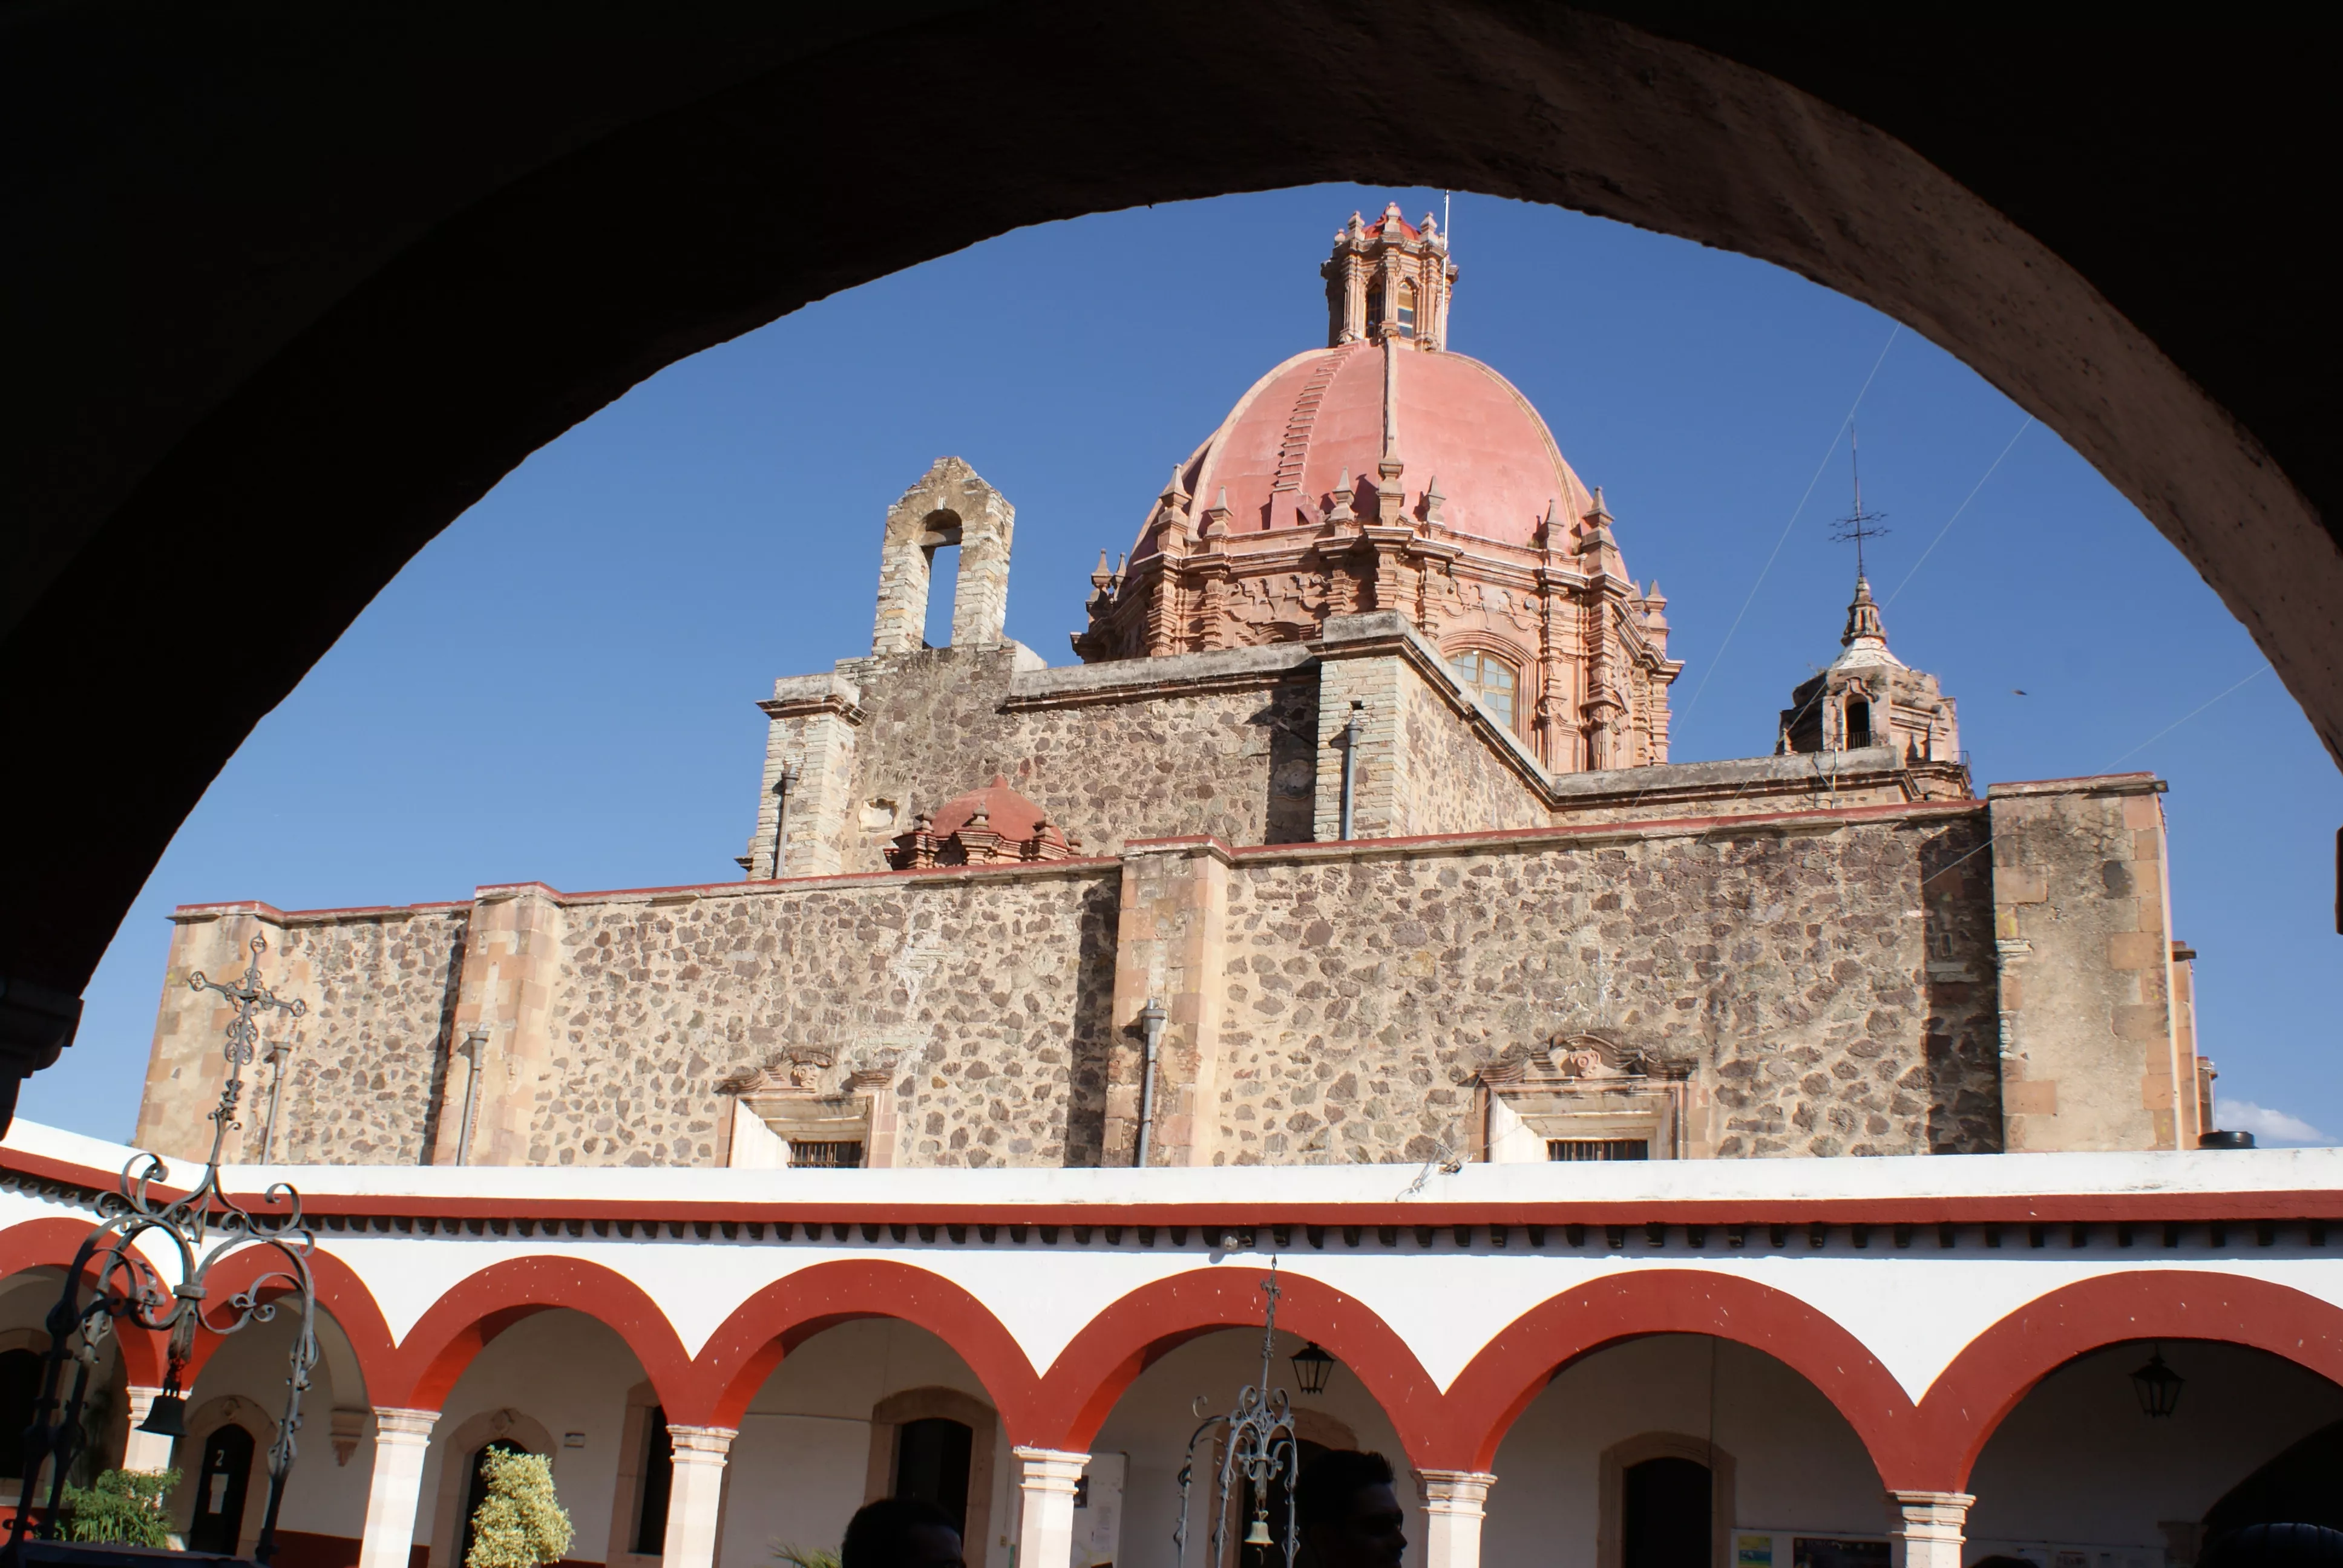 La Valenciana in Mexico, North America | Architecture - Rated 3.8